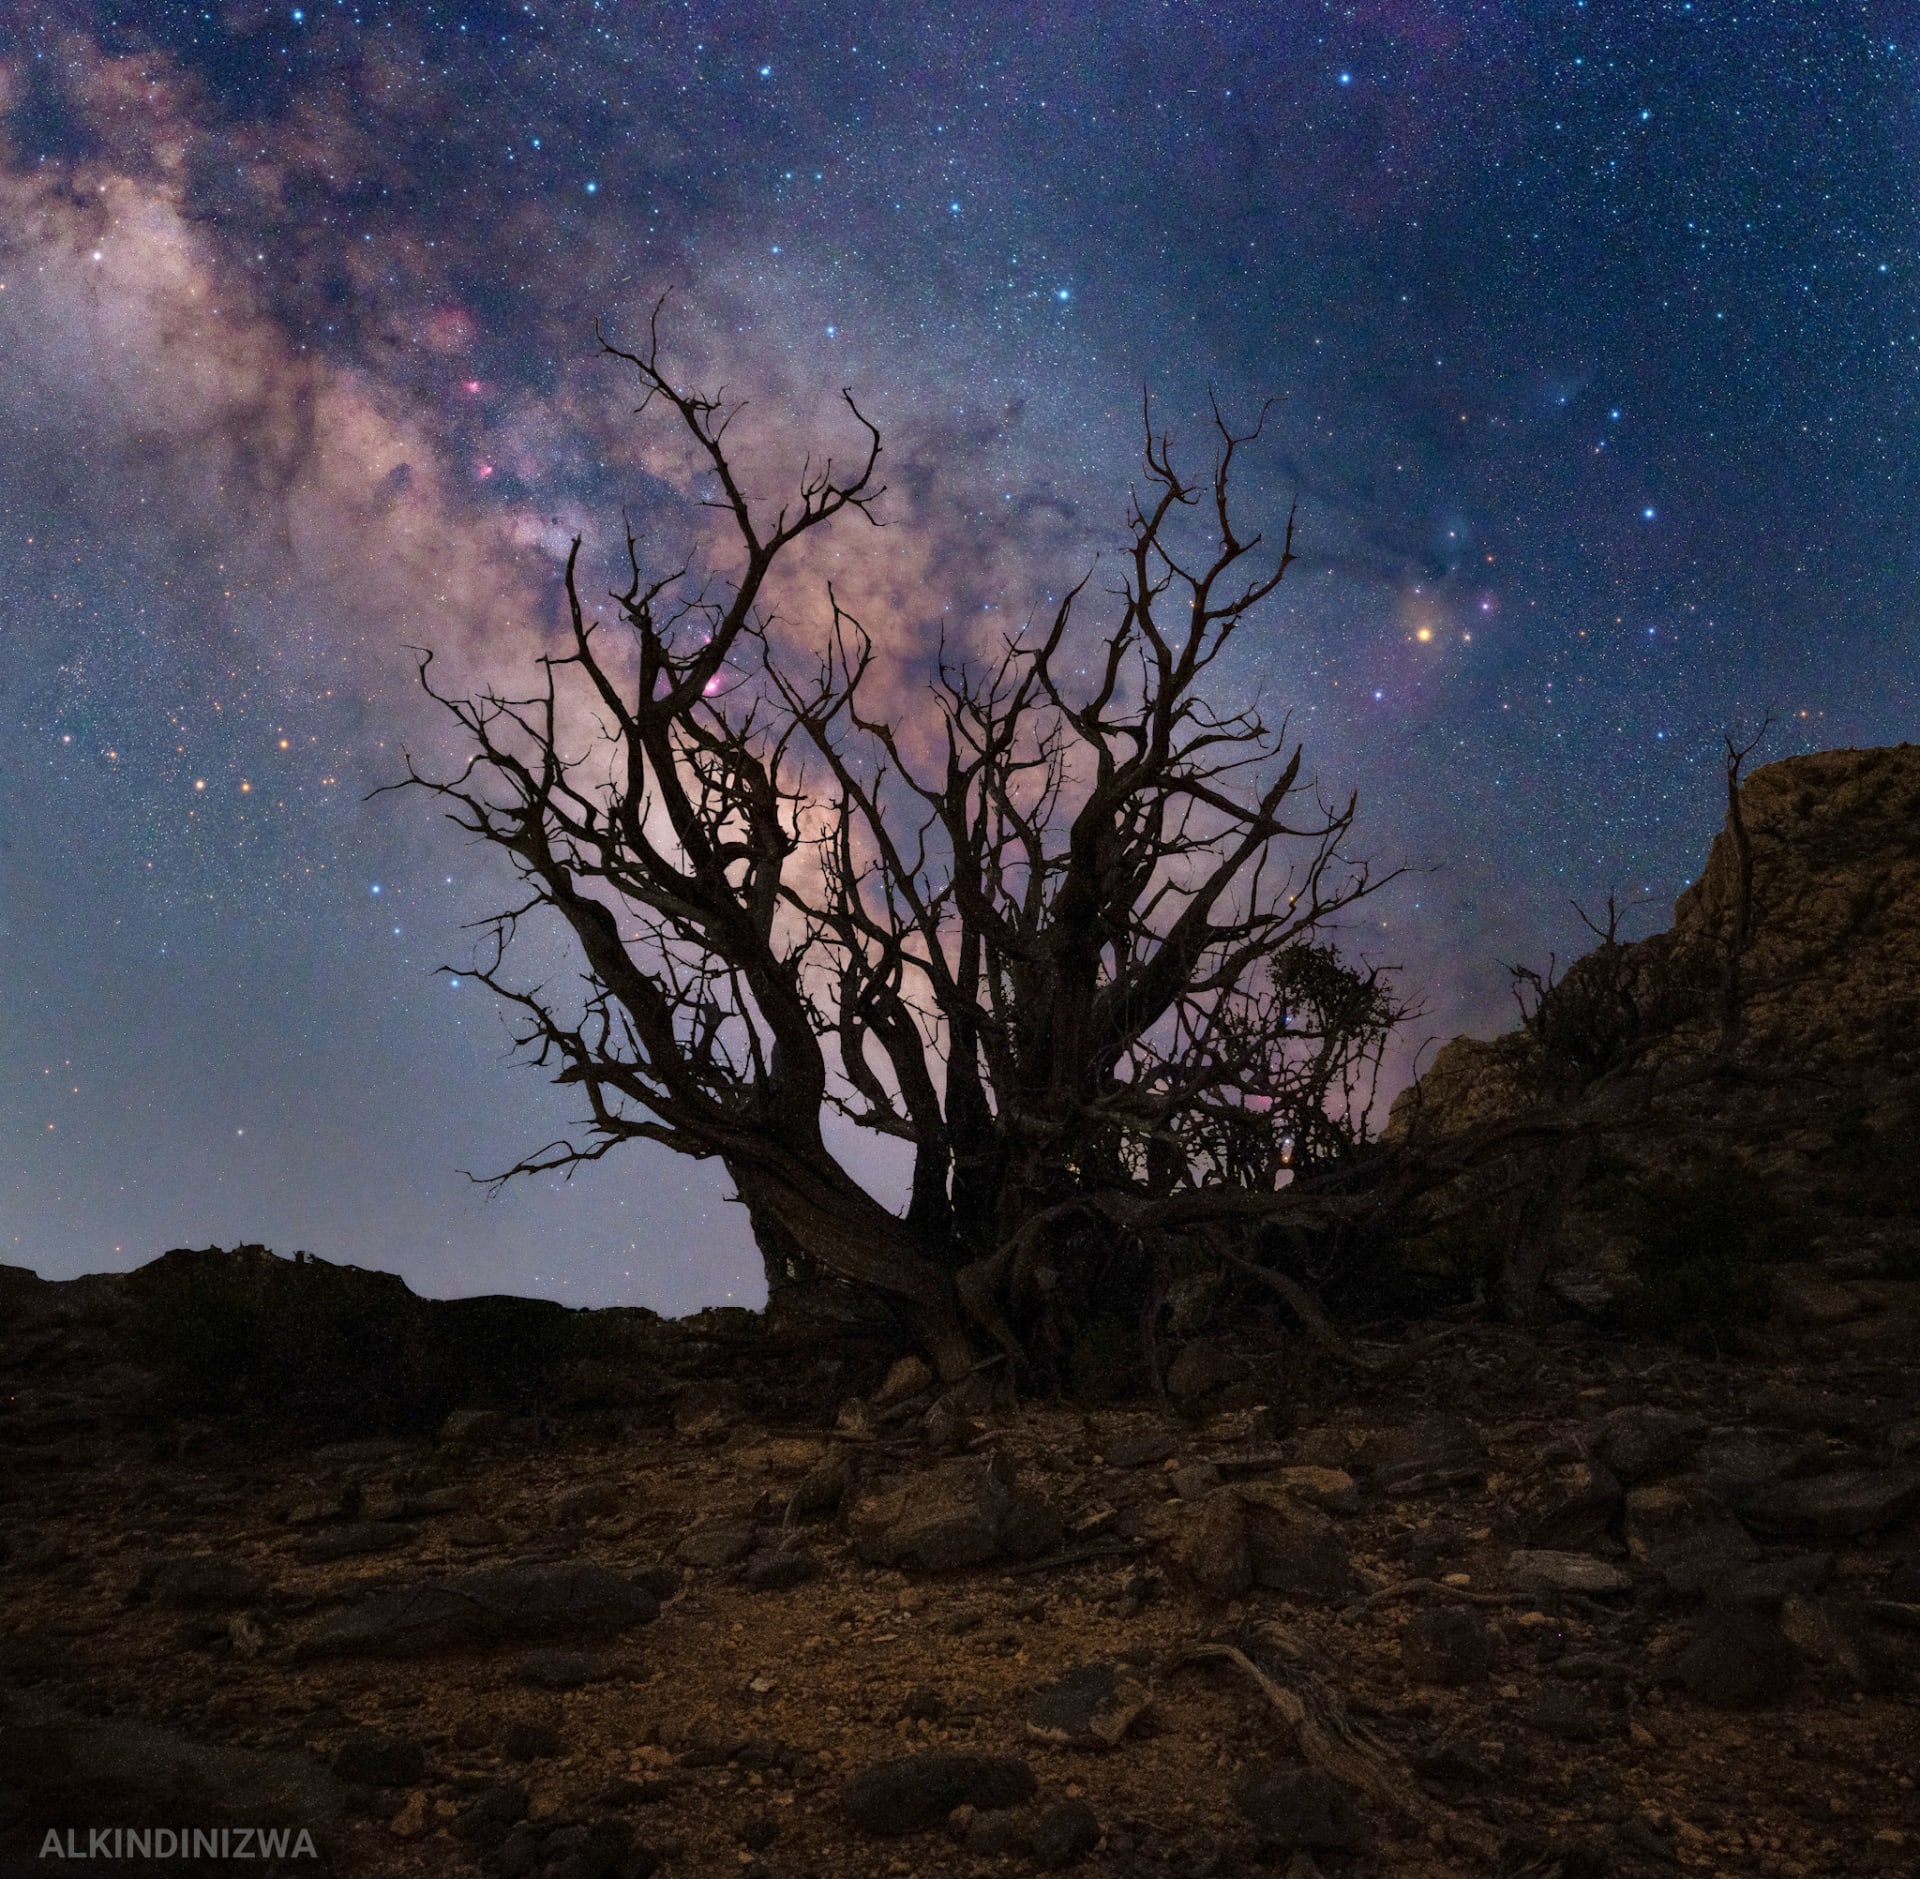 في سلطنة عُمان.. شاهد روائع الكون من محمية الحجر الغربي لأضواء النجوم